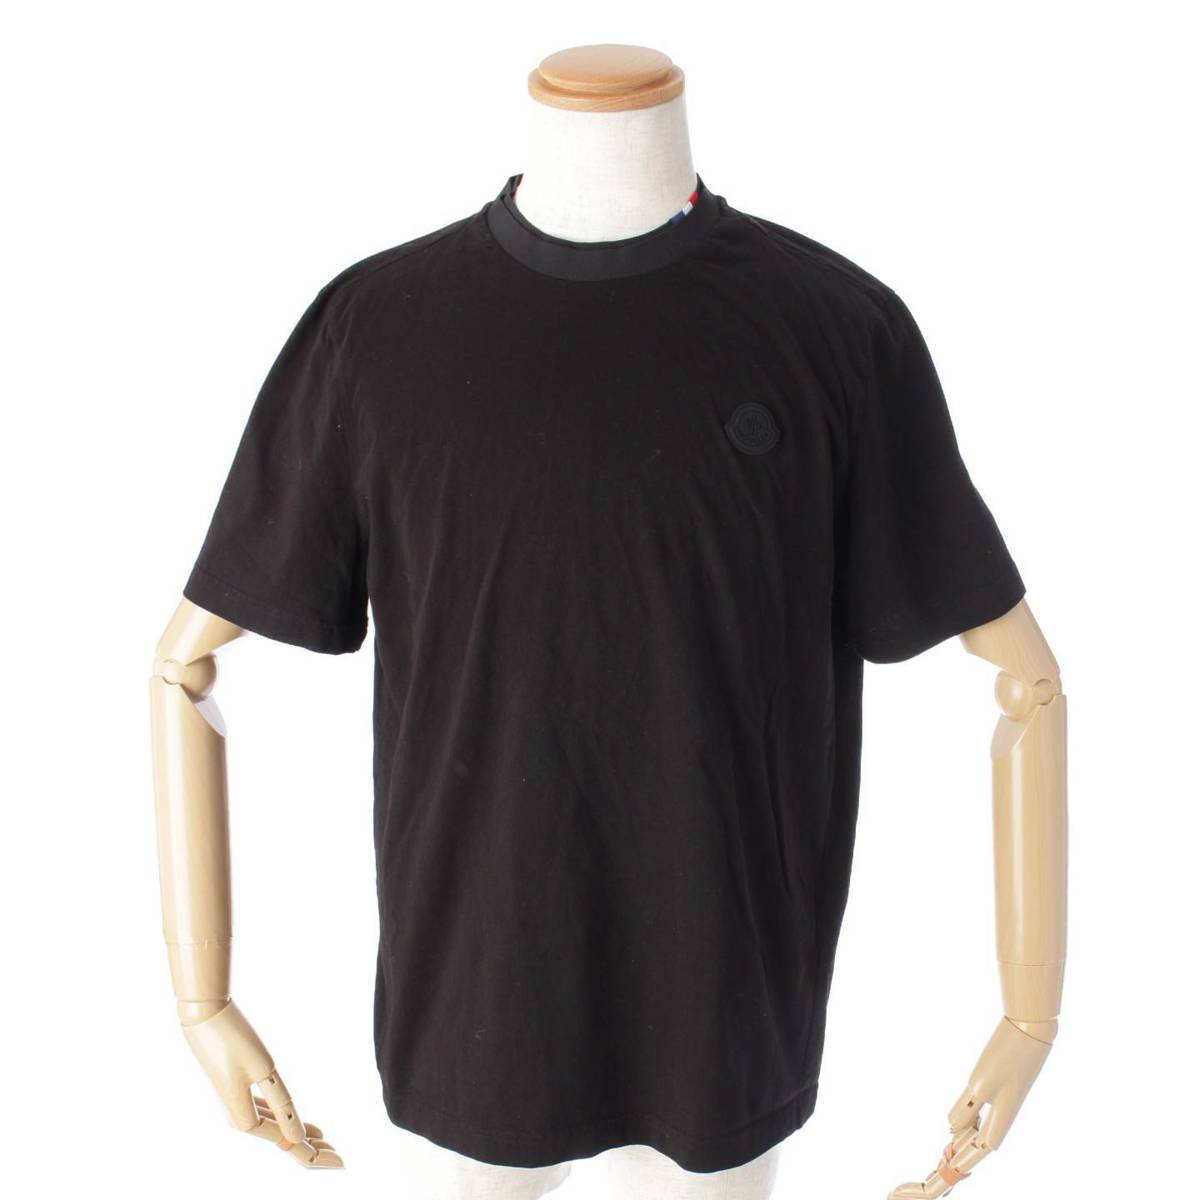 モンクレール(Moncler) 21SS C-SCOM Tシャツ トップス 51102 ブラック